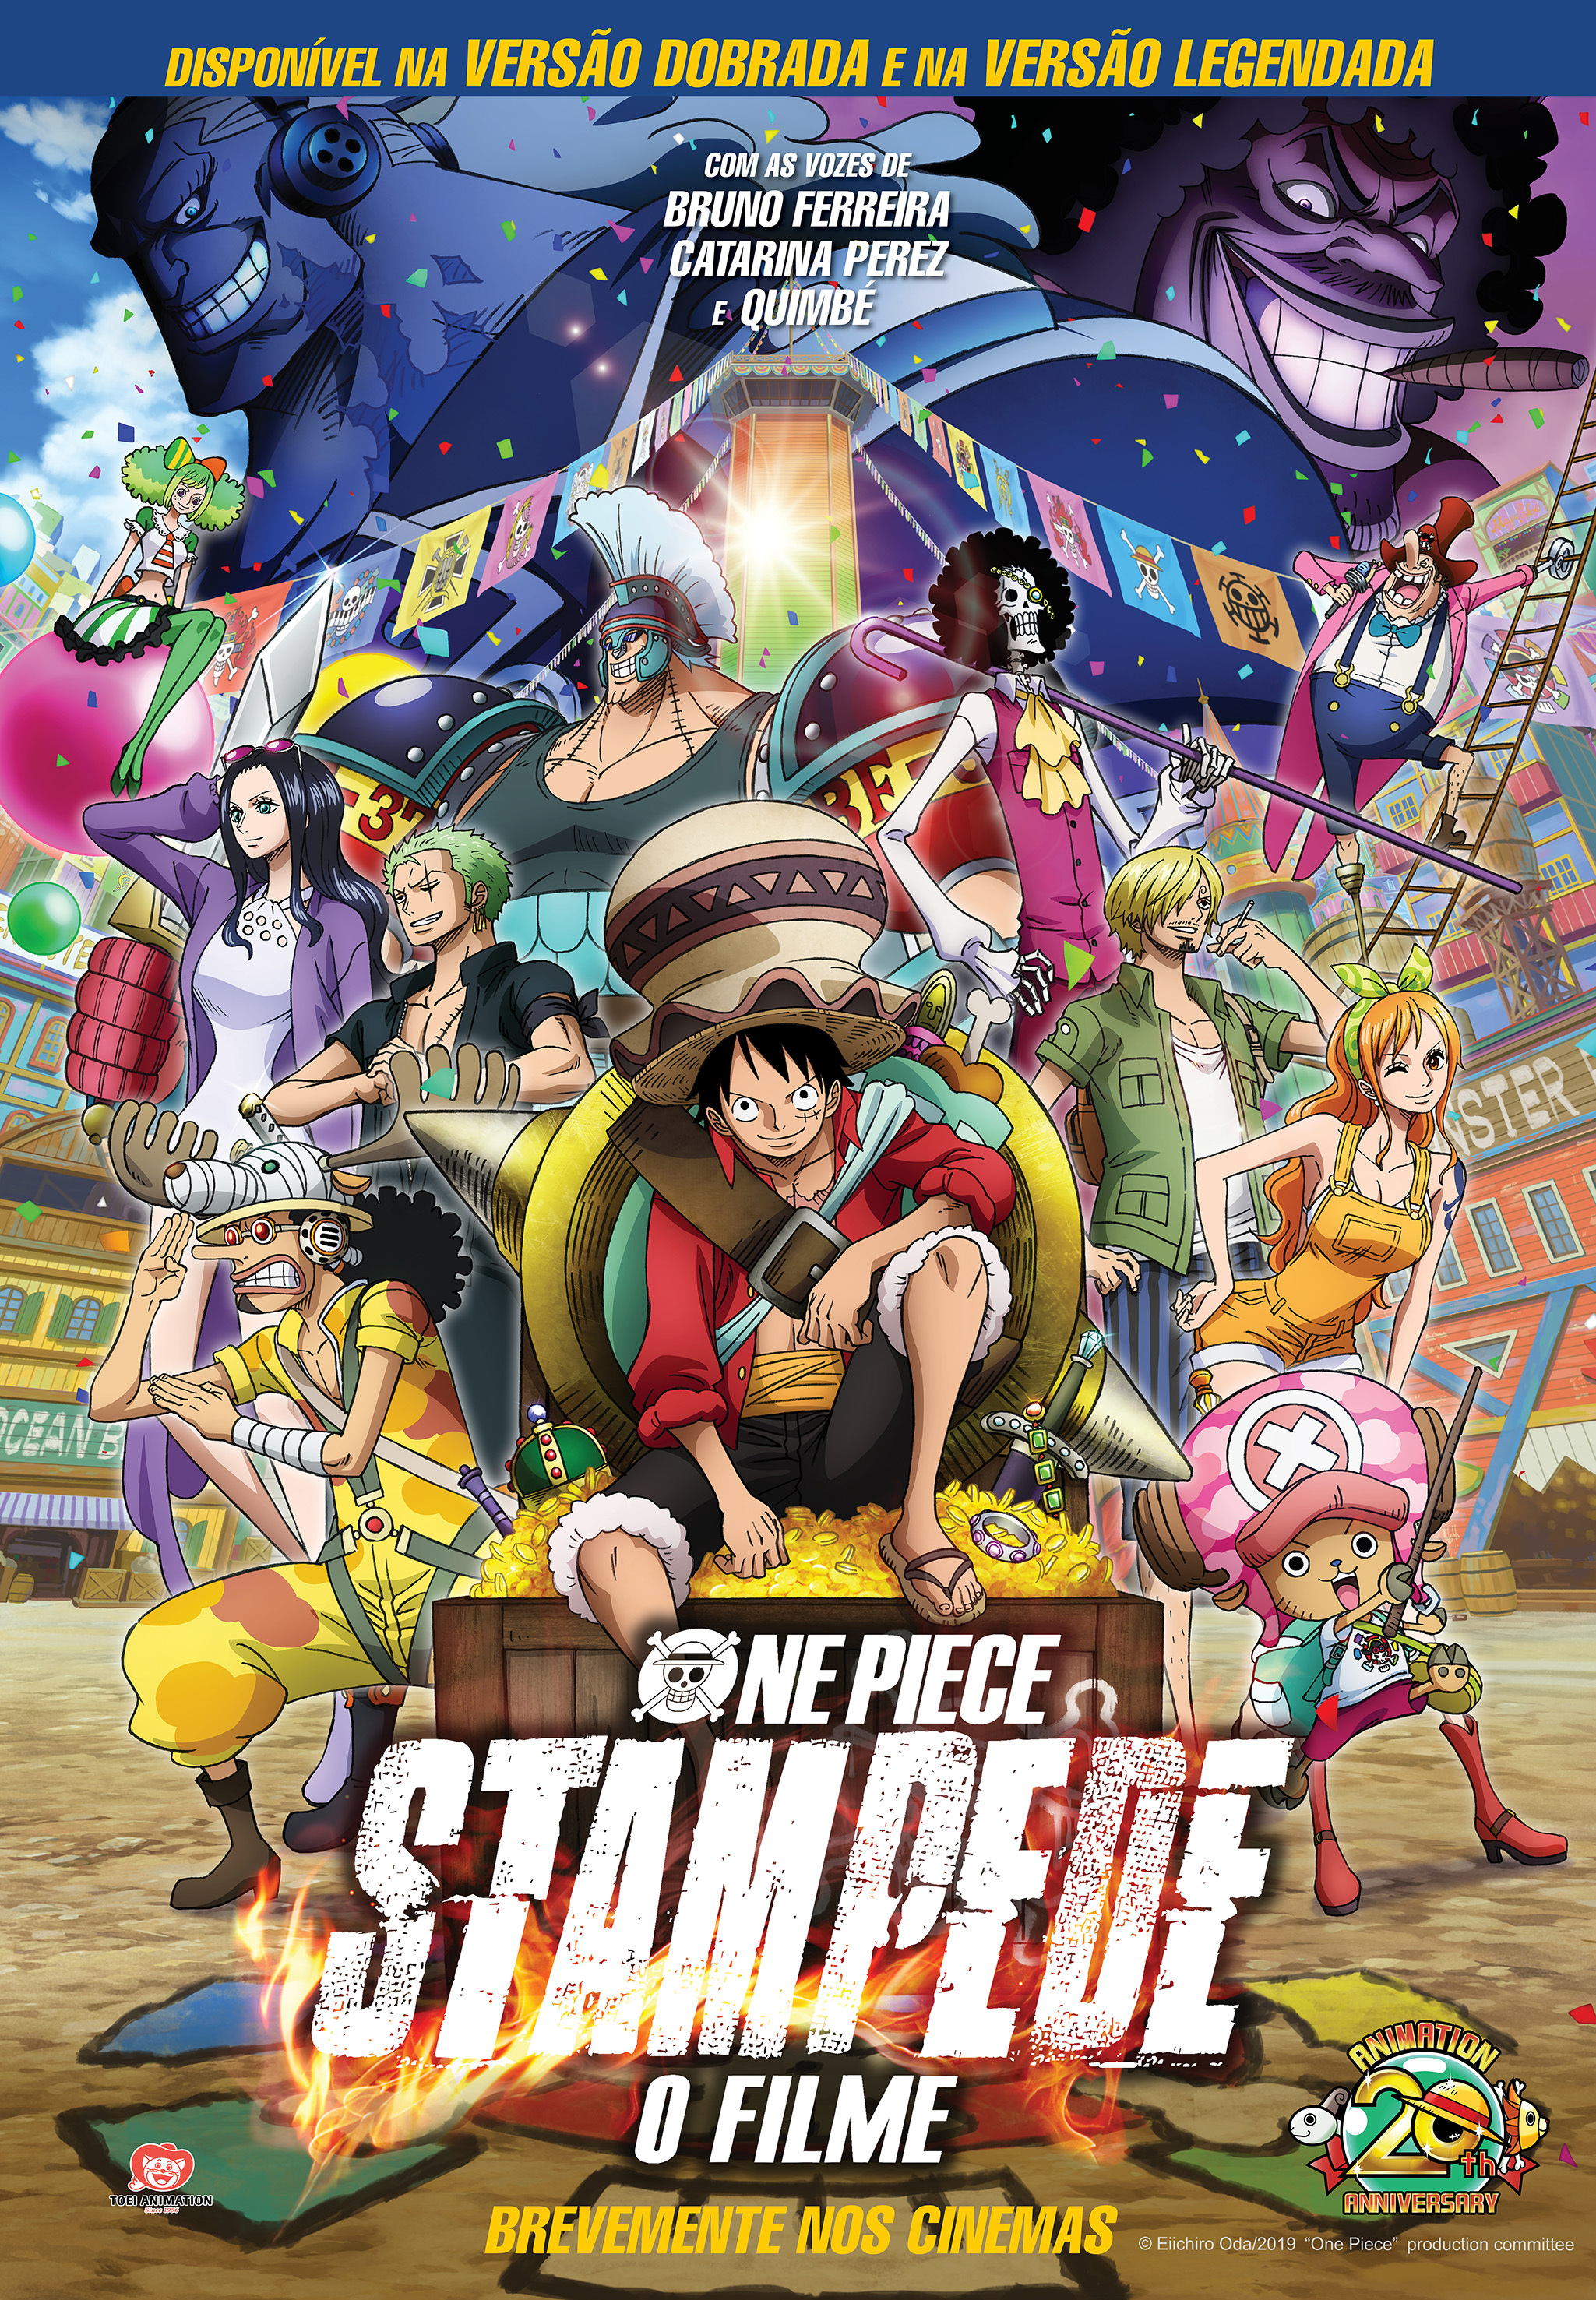 One Piece: Stampede já ganhou mais de 1 milhão de dólares nos USA e Canada